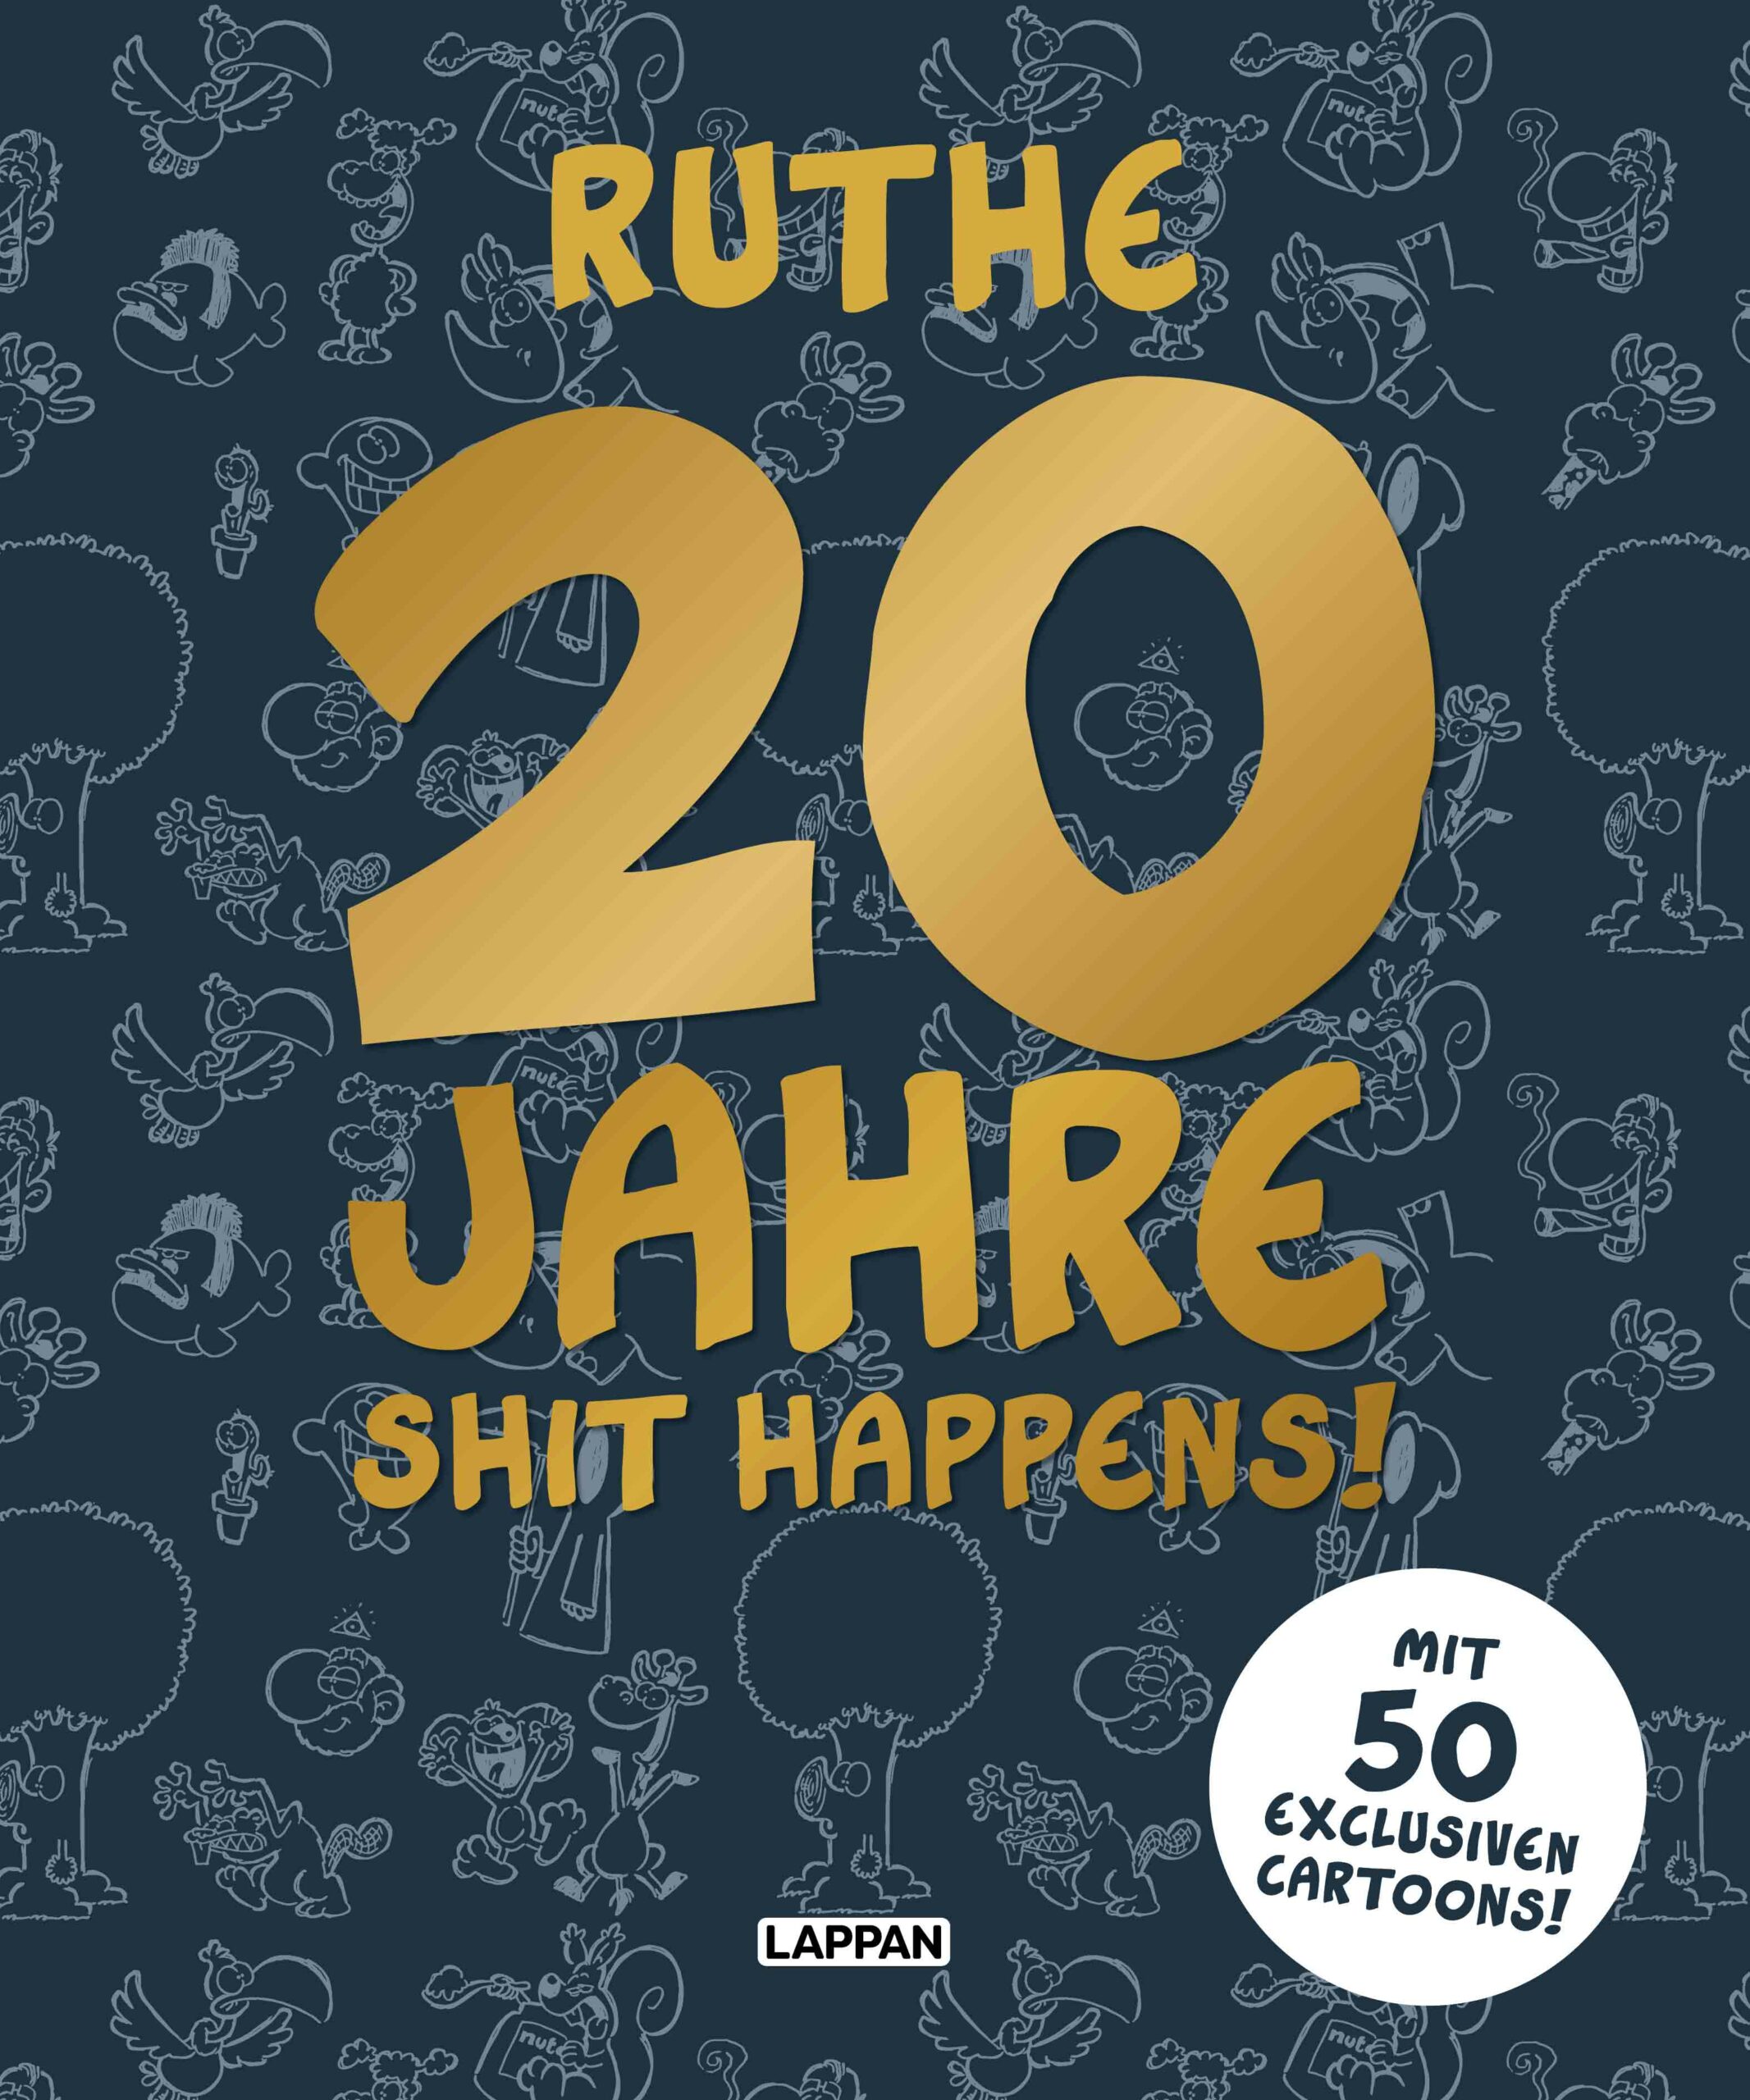 20 Jahre Shit happens! von Ralph Ruthe